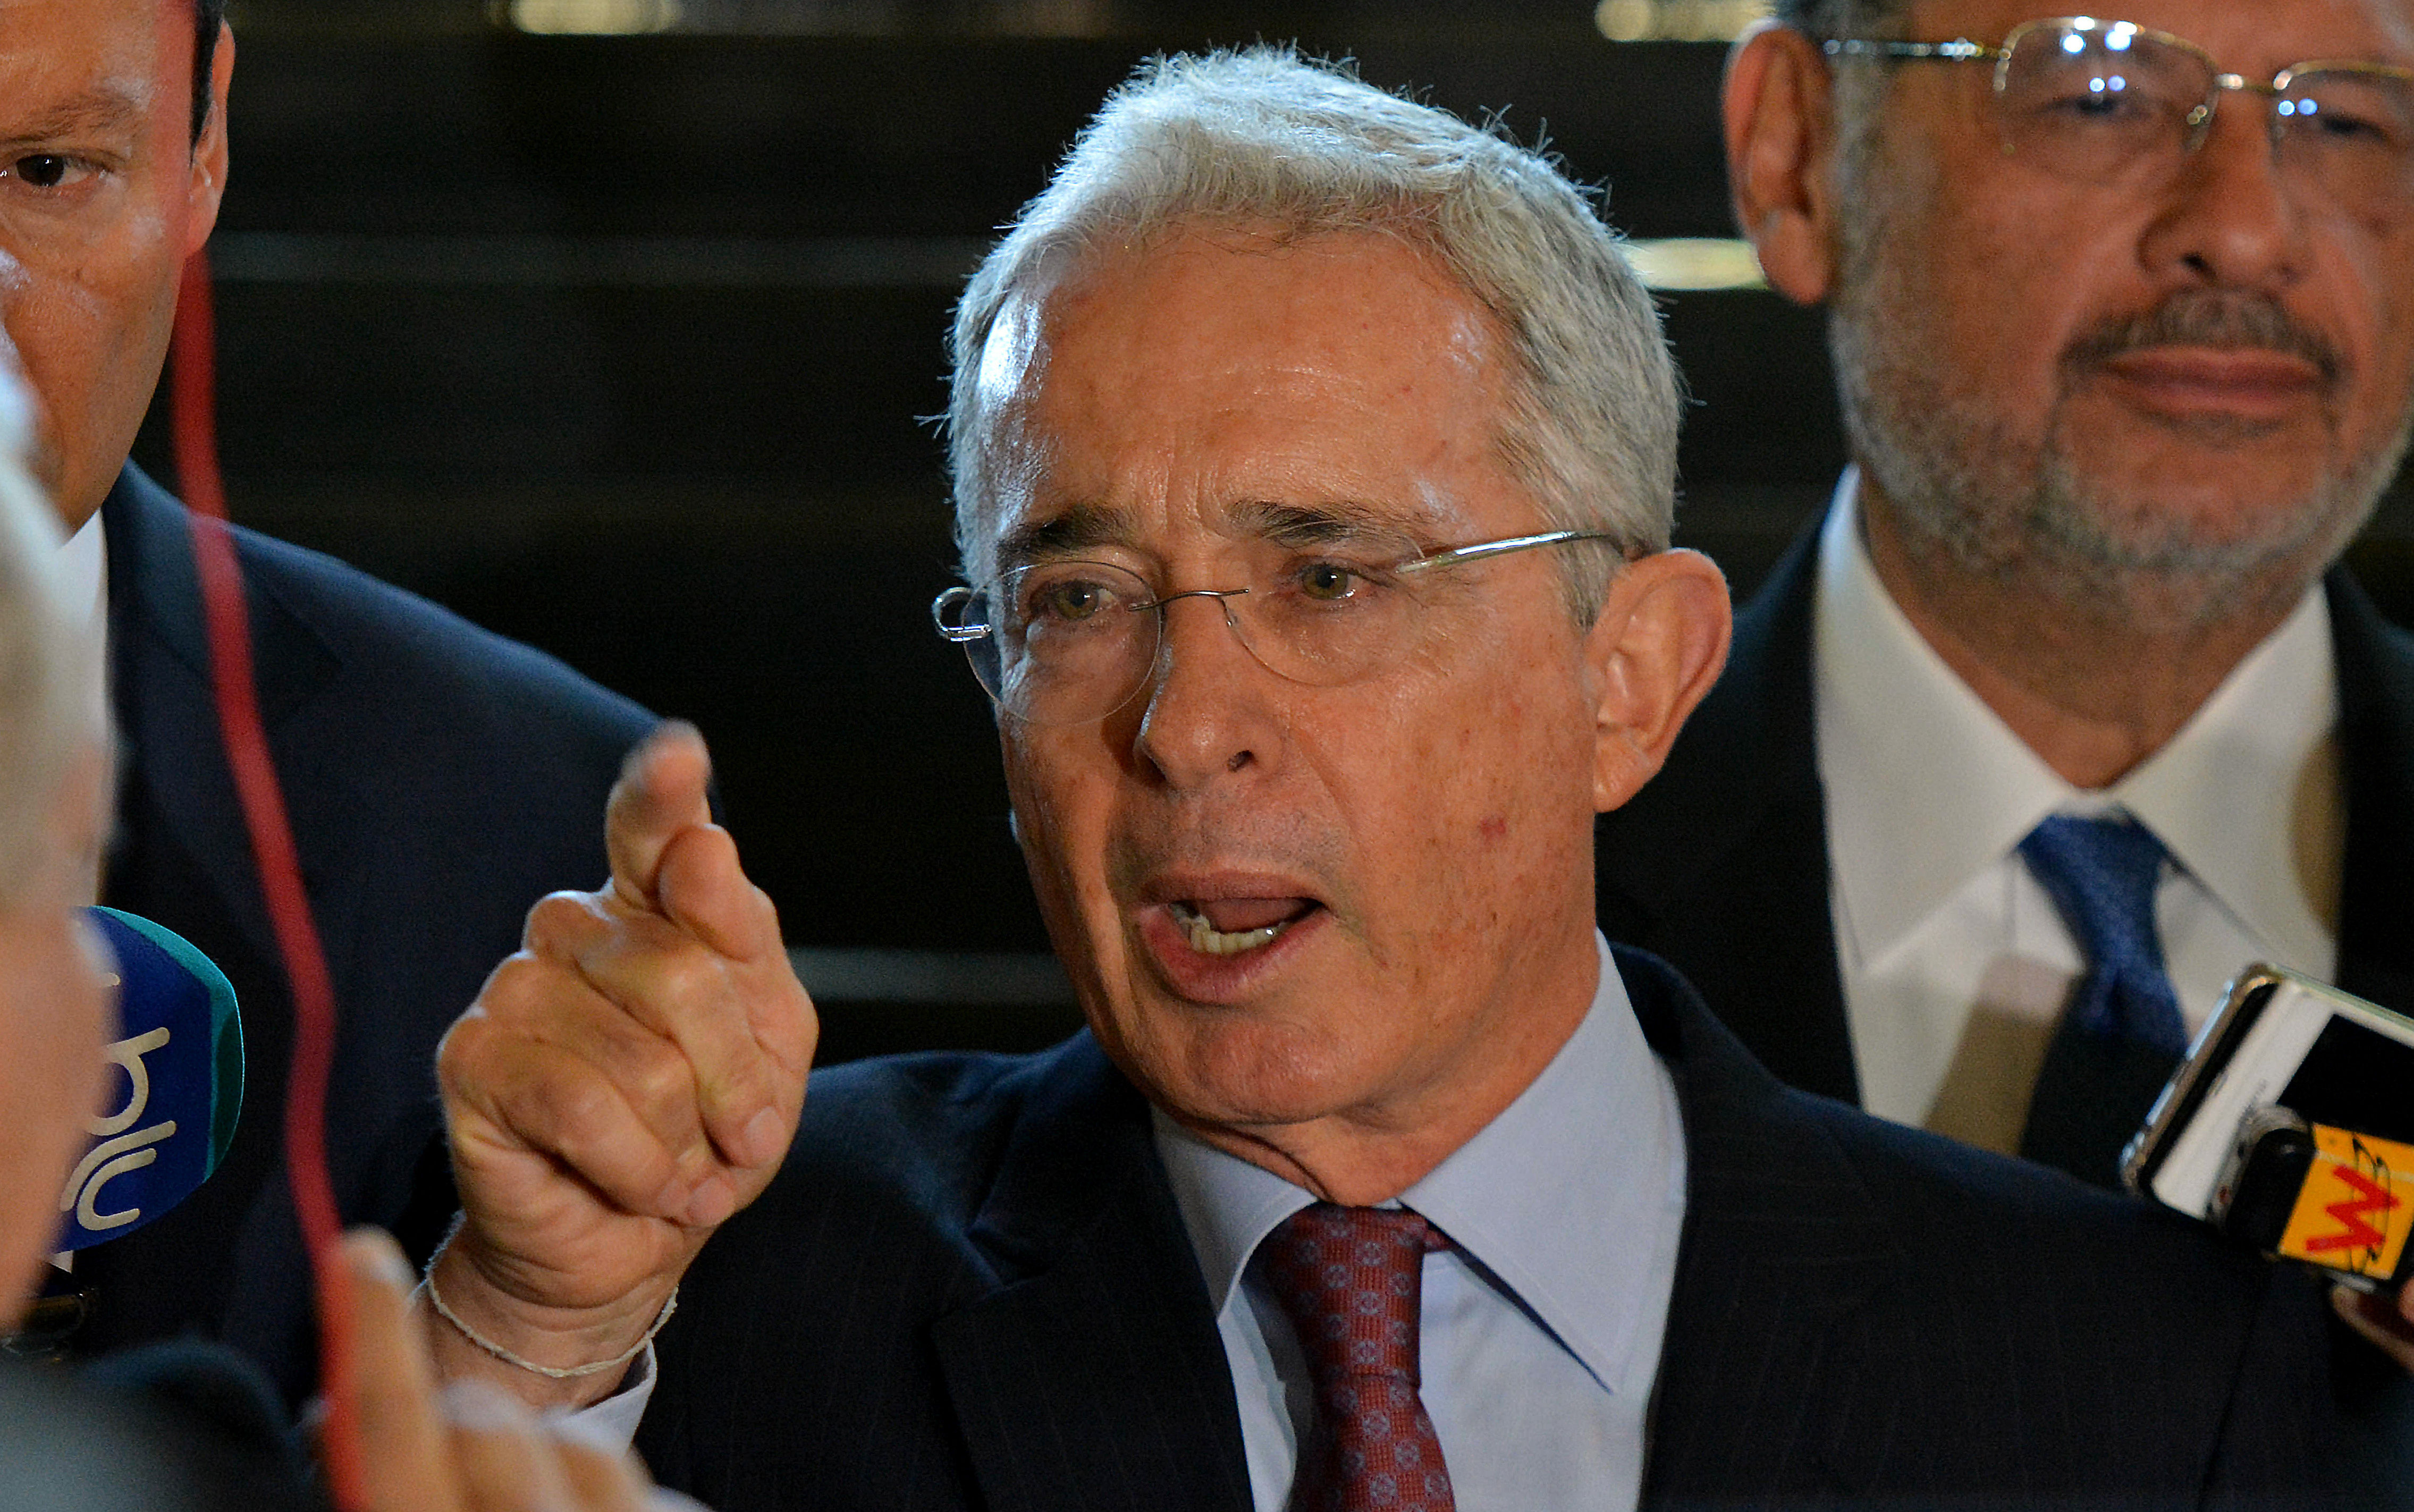 Defensa de Álvaro Uribe decepcionada por detención domiciliaria y cataloga la acción como “injusta” (Comunicado)